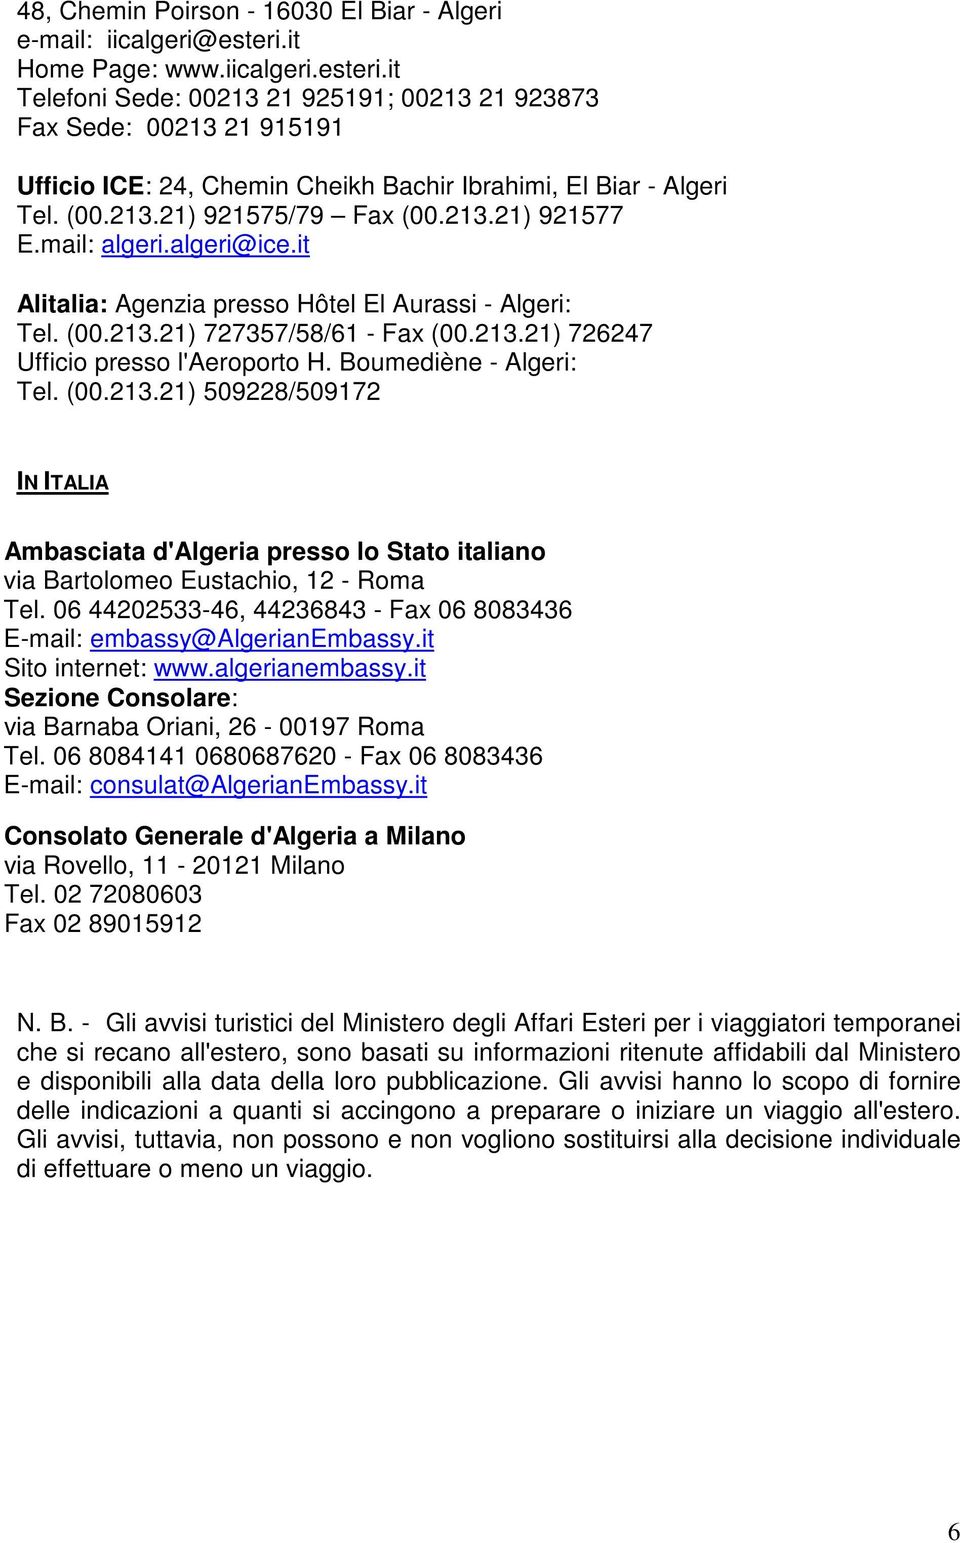 213.21) 921577 E.mail: algeri.algeri@ice.it Alitalia: Agenzia presso Hôtel El Aurassi - Algeri: Tel. (00.213.21) 727357/58/61 - Fax (00.213.21) 726247 Ufficio presso l'aeroporto H.